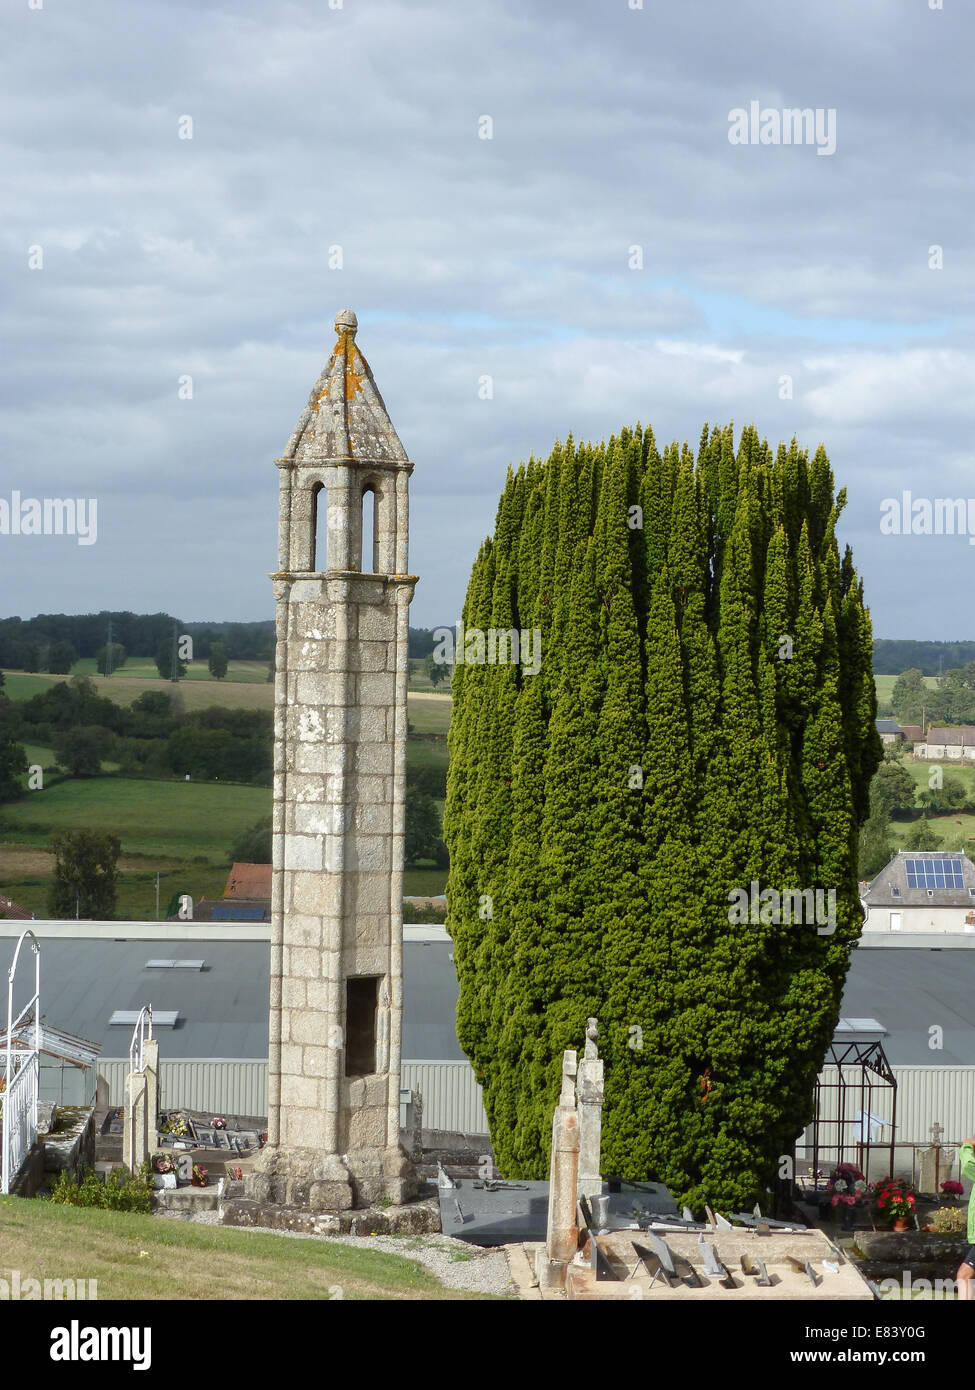 Laterne des morts de Saint Agnant De Versillat, France Banque D'Images